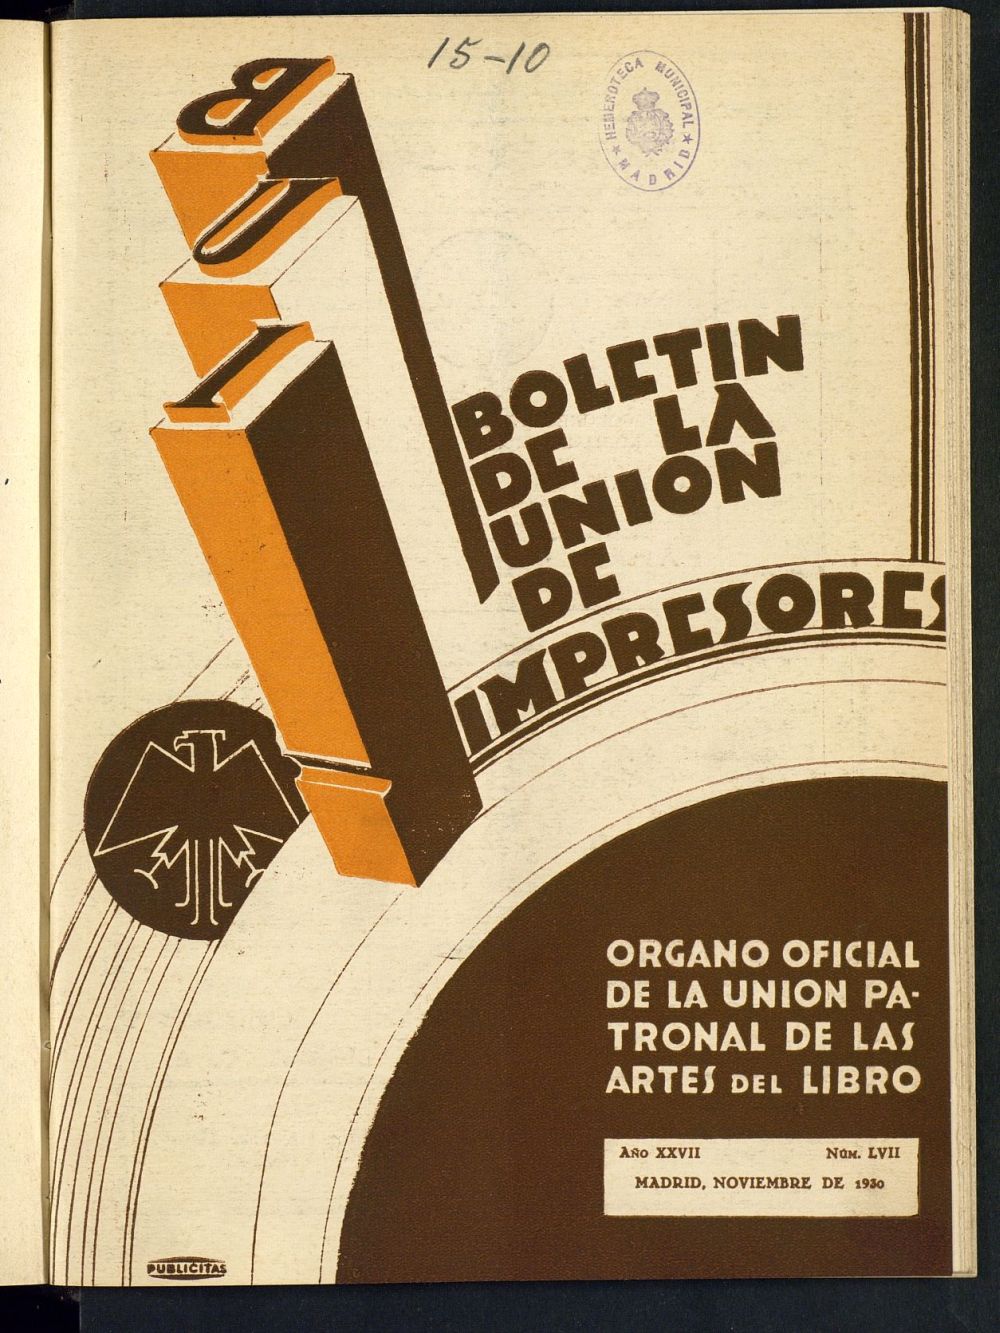 Boletn de la unin de impresores : rgano de la unin patronal de las artes del libro de octubre de 1930